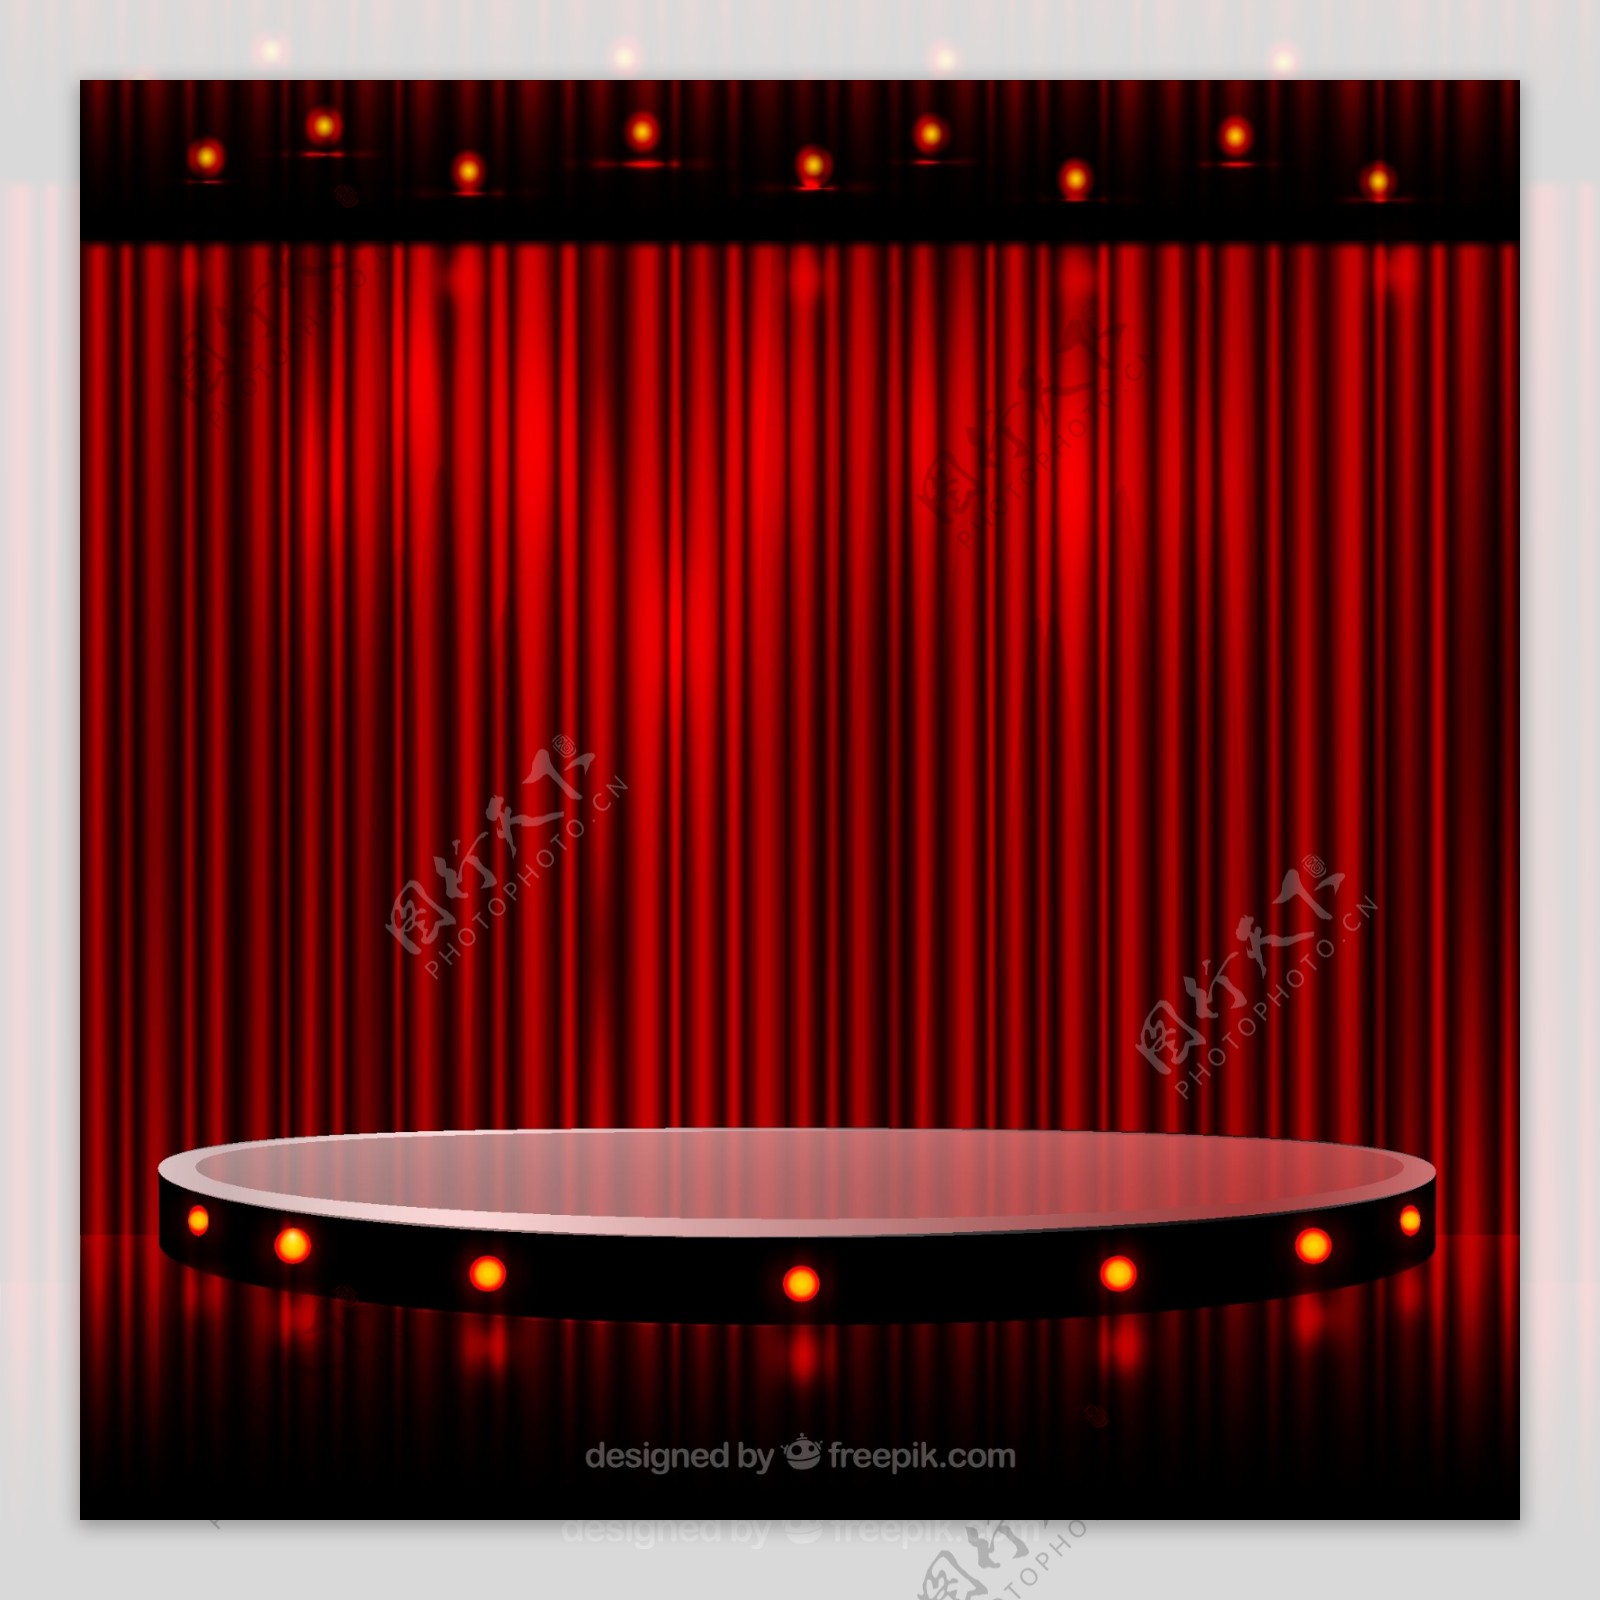 精美红色舞台设计矢量图图片